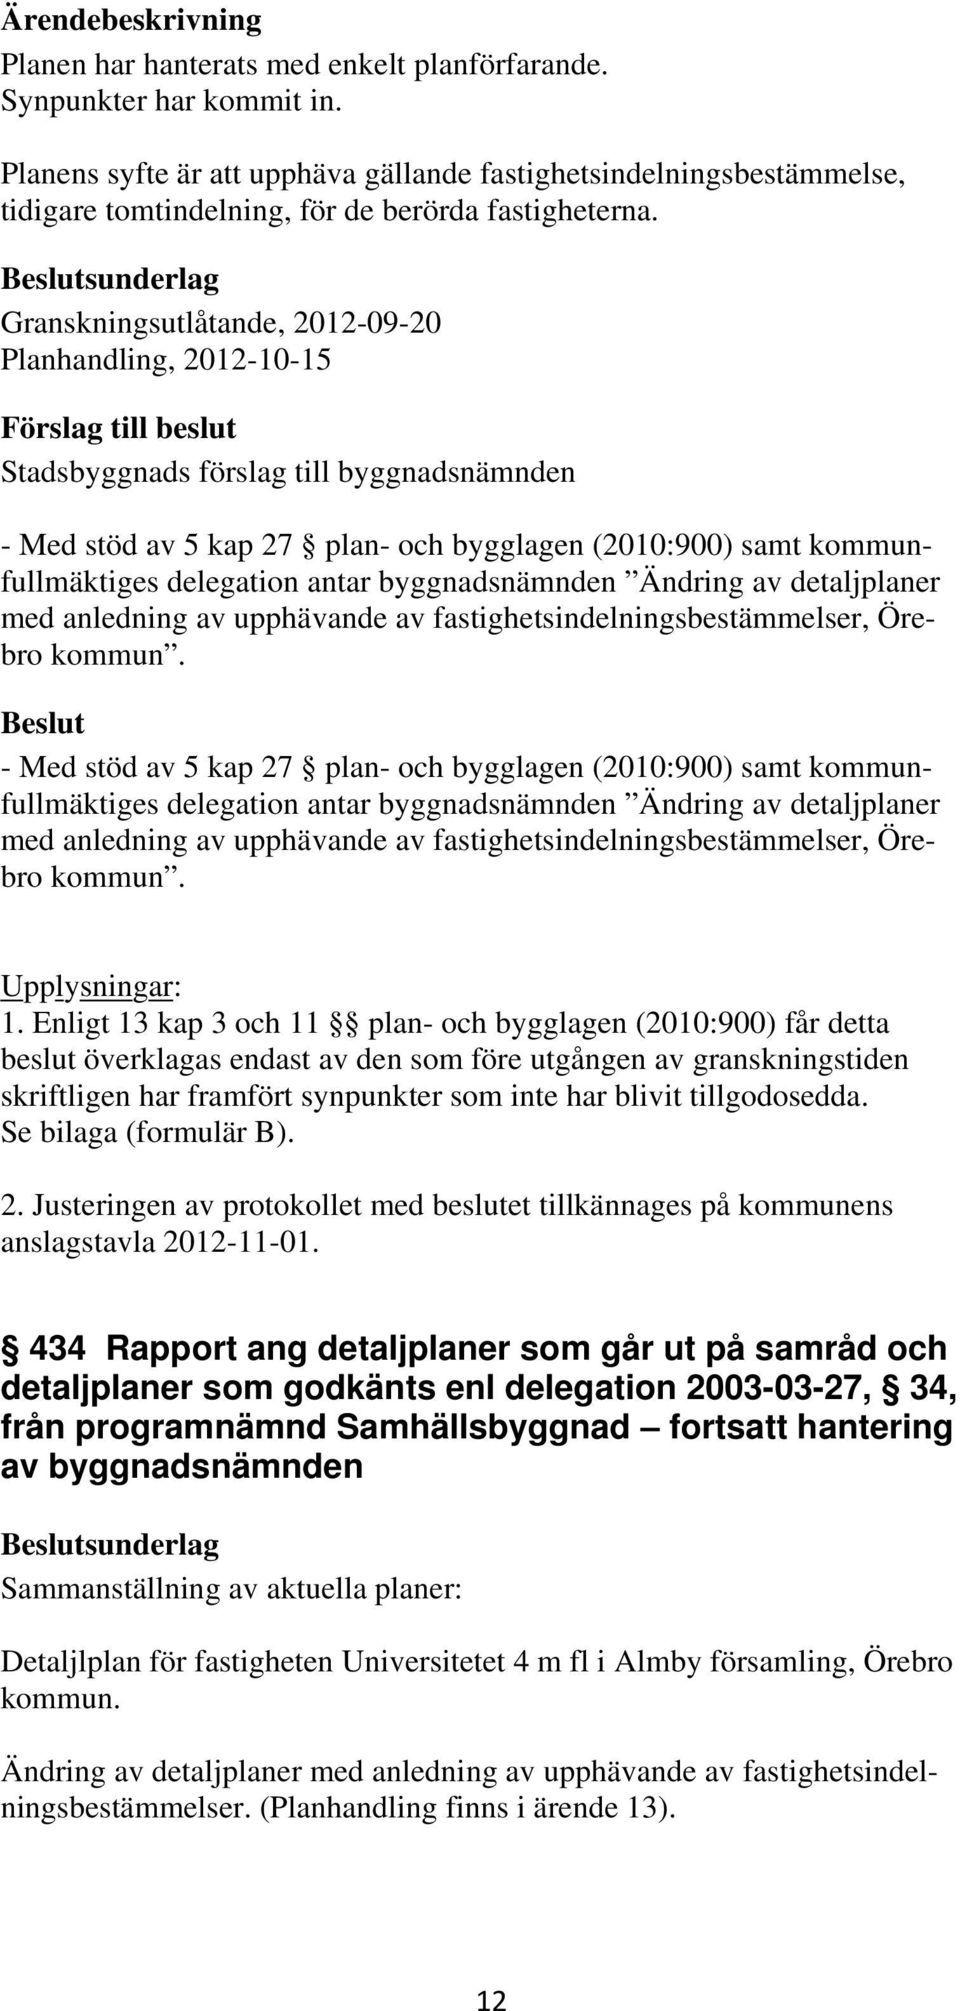 detaljplaner med anledning av upphävande av fastighetsindelningsbestämmelser, Örebro kommun.